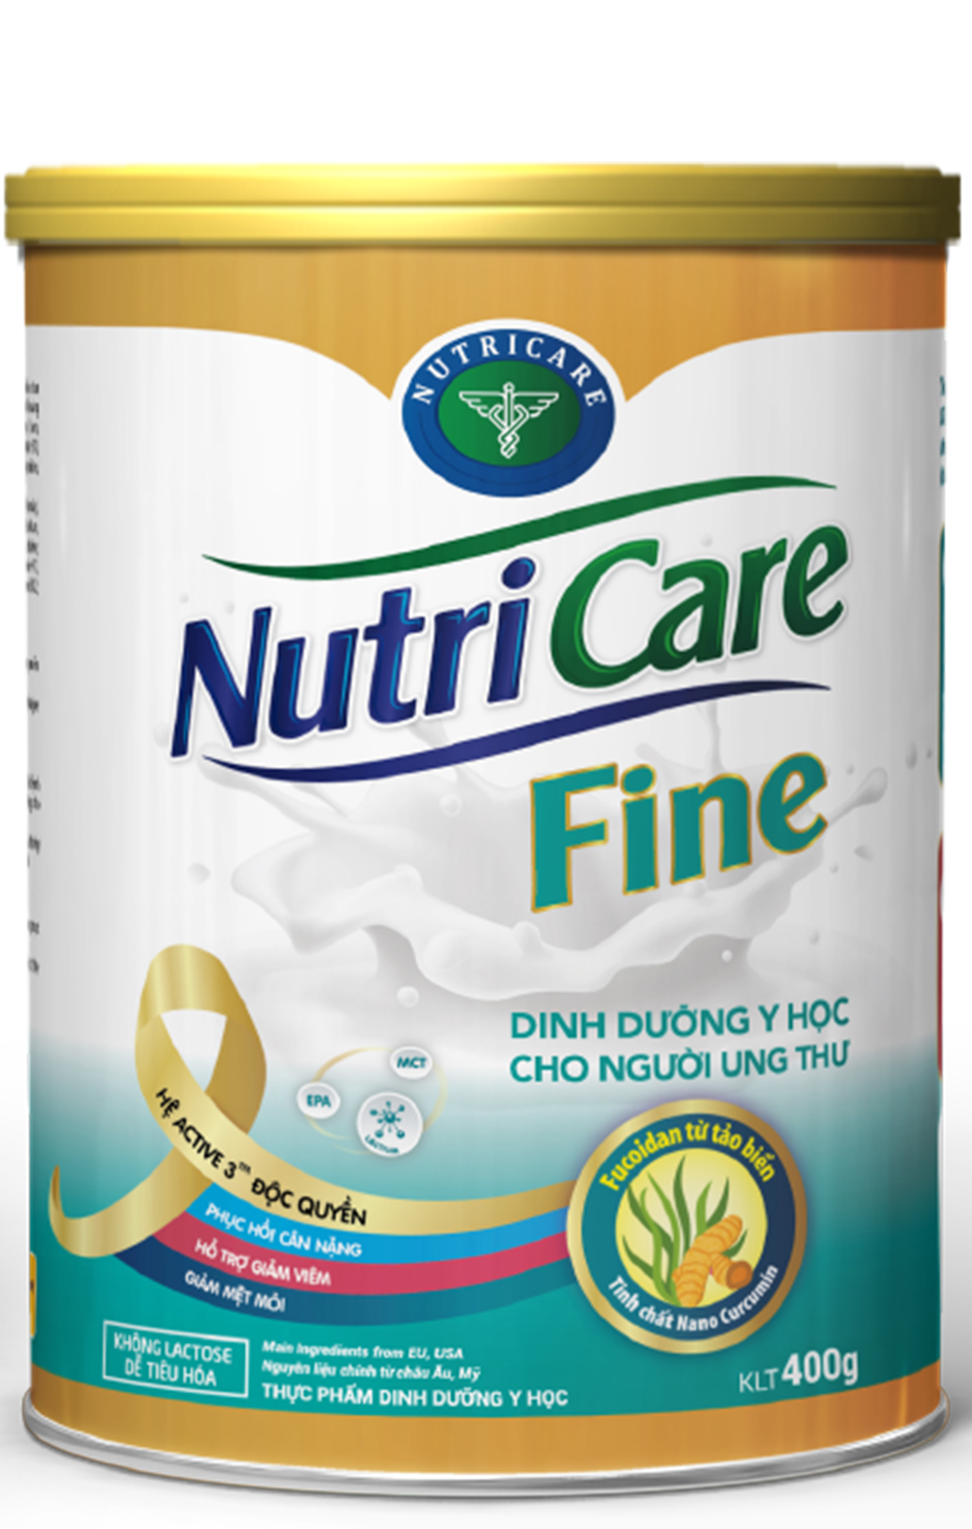 Sữa bột Nutricare Fine - dinh dưỡng y học cho người ung thư 400g